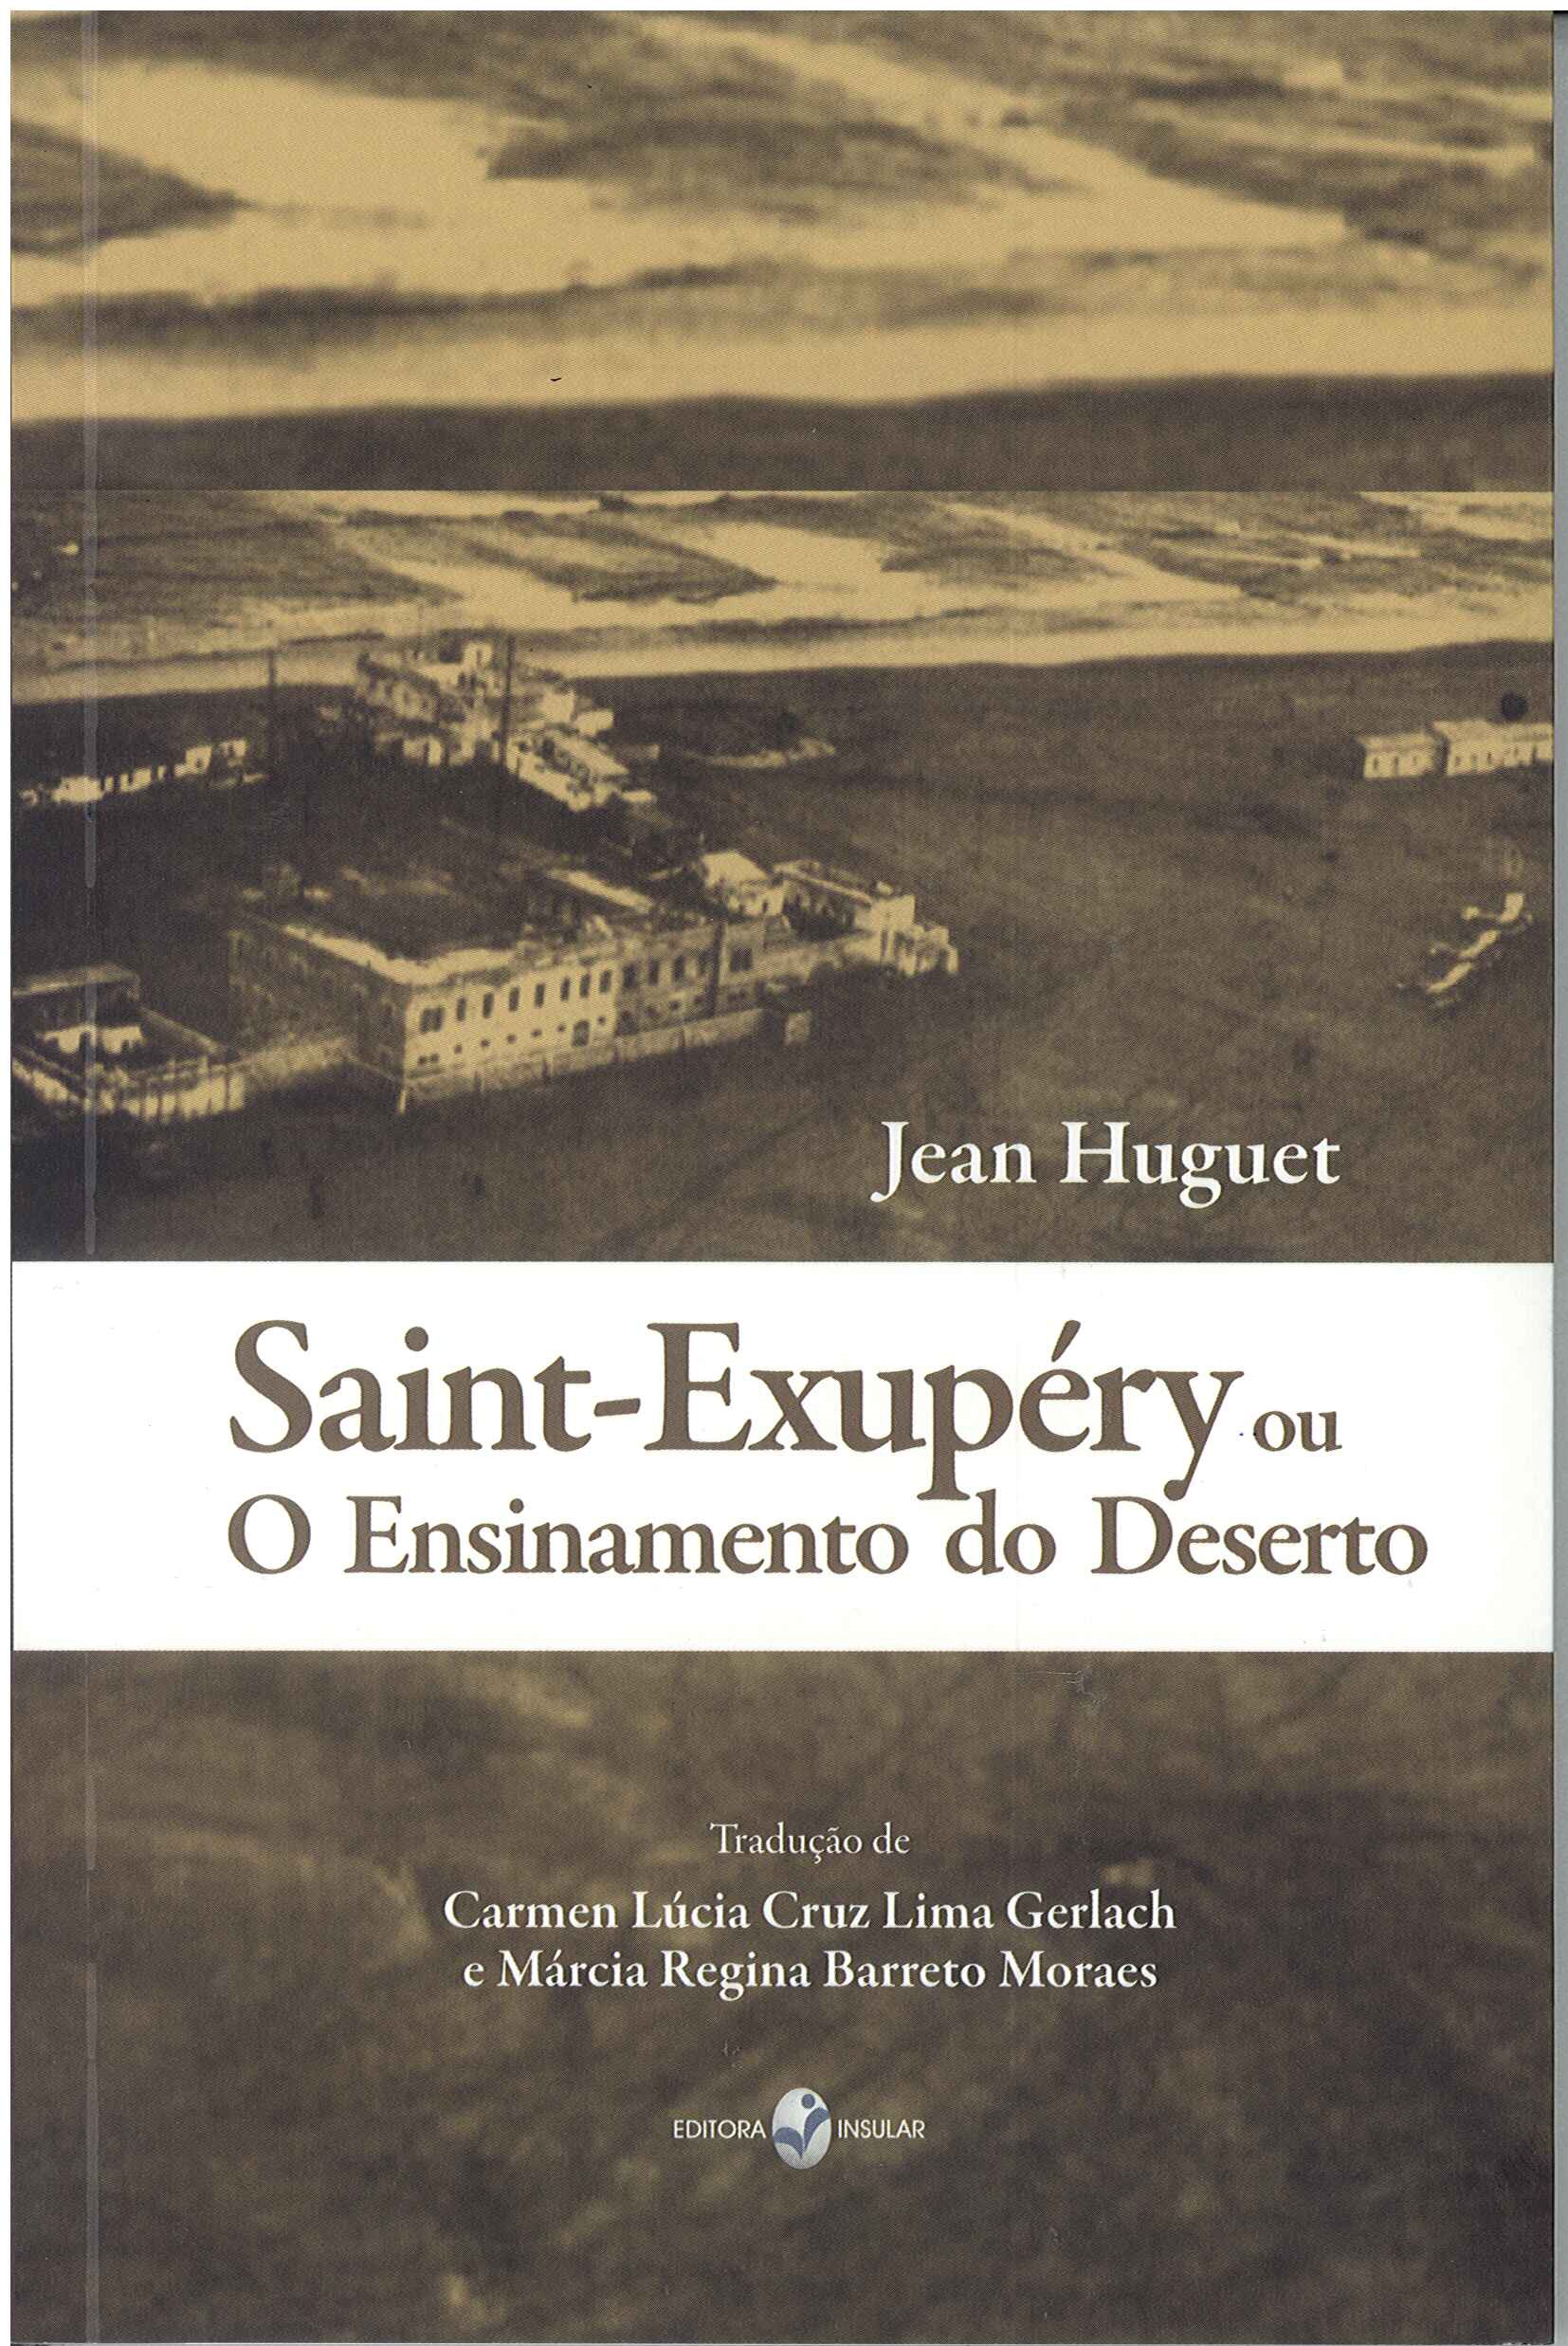 Capa do livro Saint-Exupéry ou O Ensinamento do Deserto, de Jean Huguet. Tradução de Carmen Lúcia e Márcia Regina